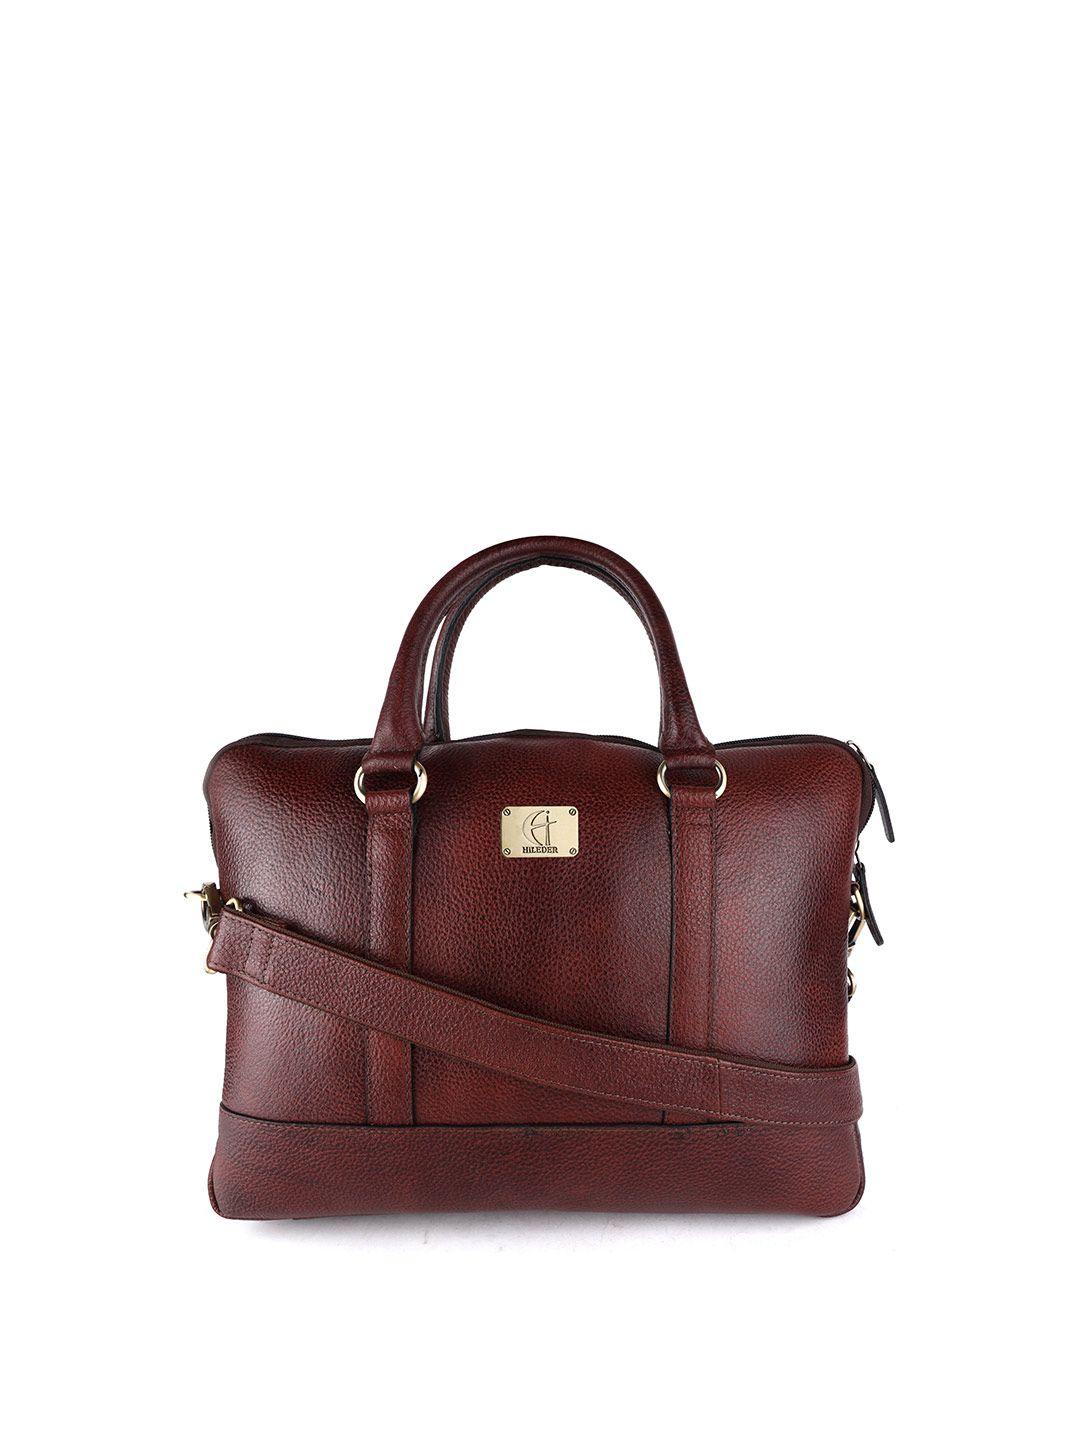 hileder women brown leather laptop bag